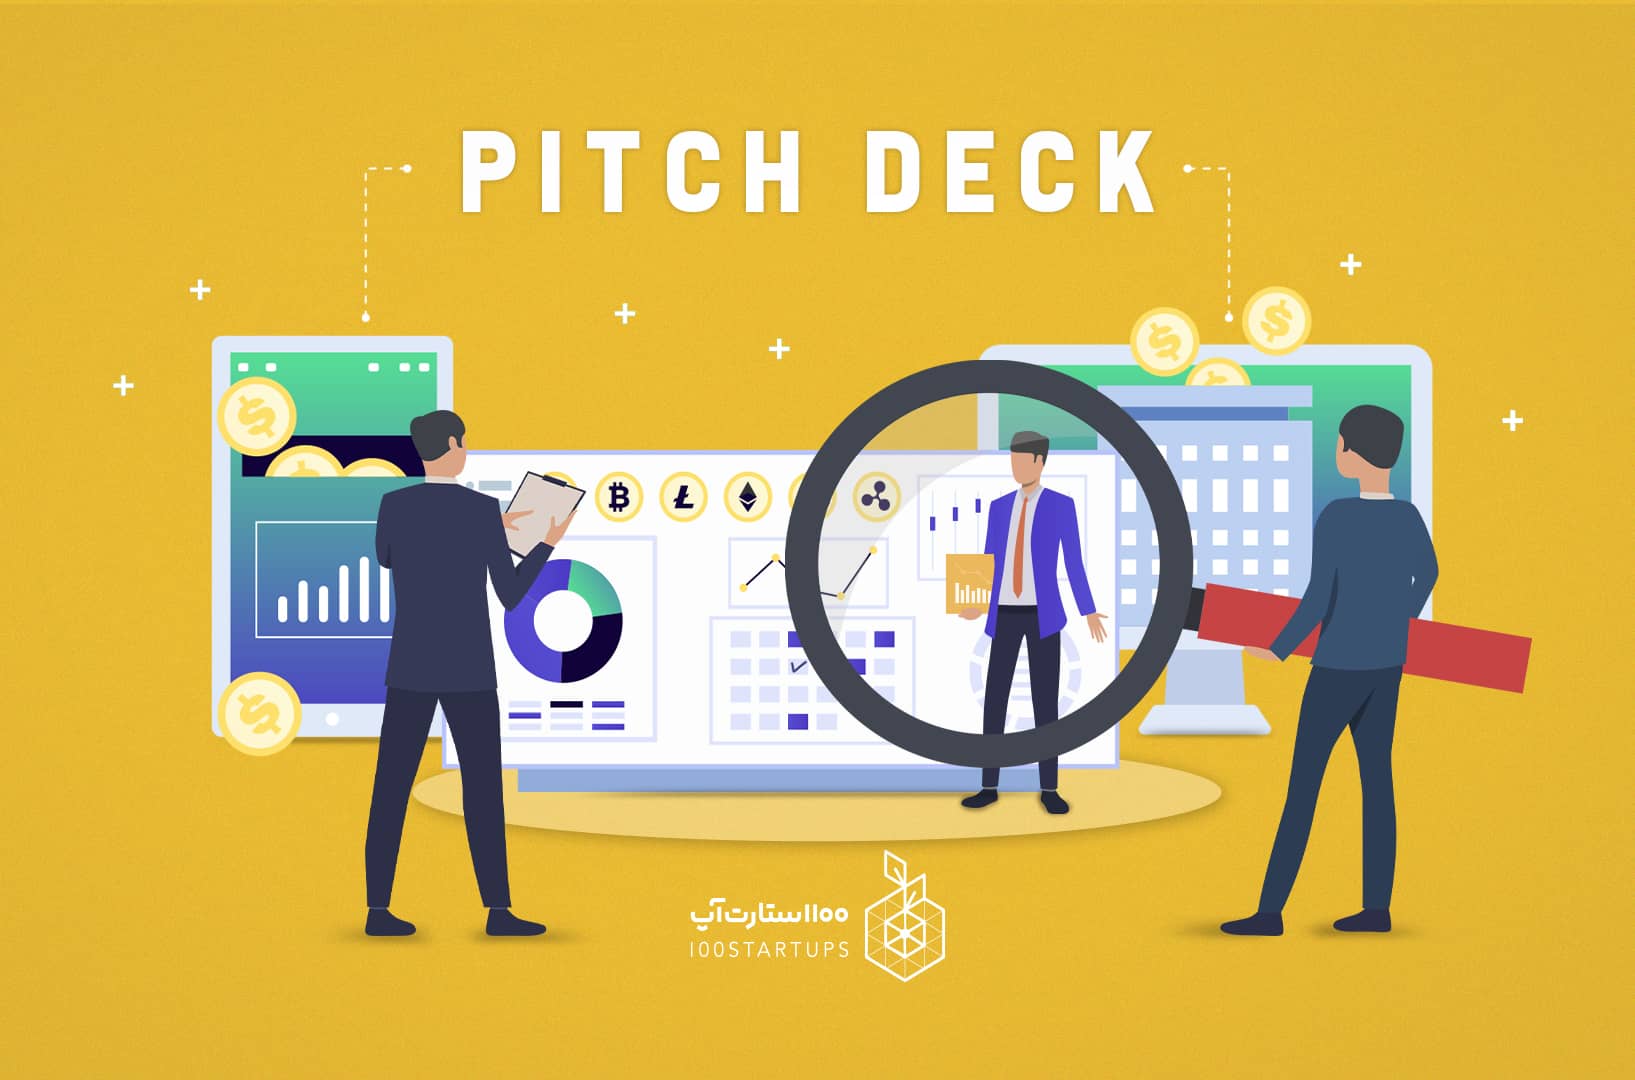 پیچ دک چیست نحوه ی معرفی استارتاپ برای سرمایه گذاران چگونه است توضیح مفهوم pitch deck در 100استارتاپ